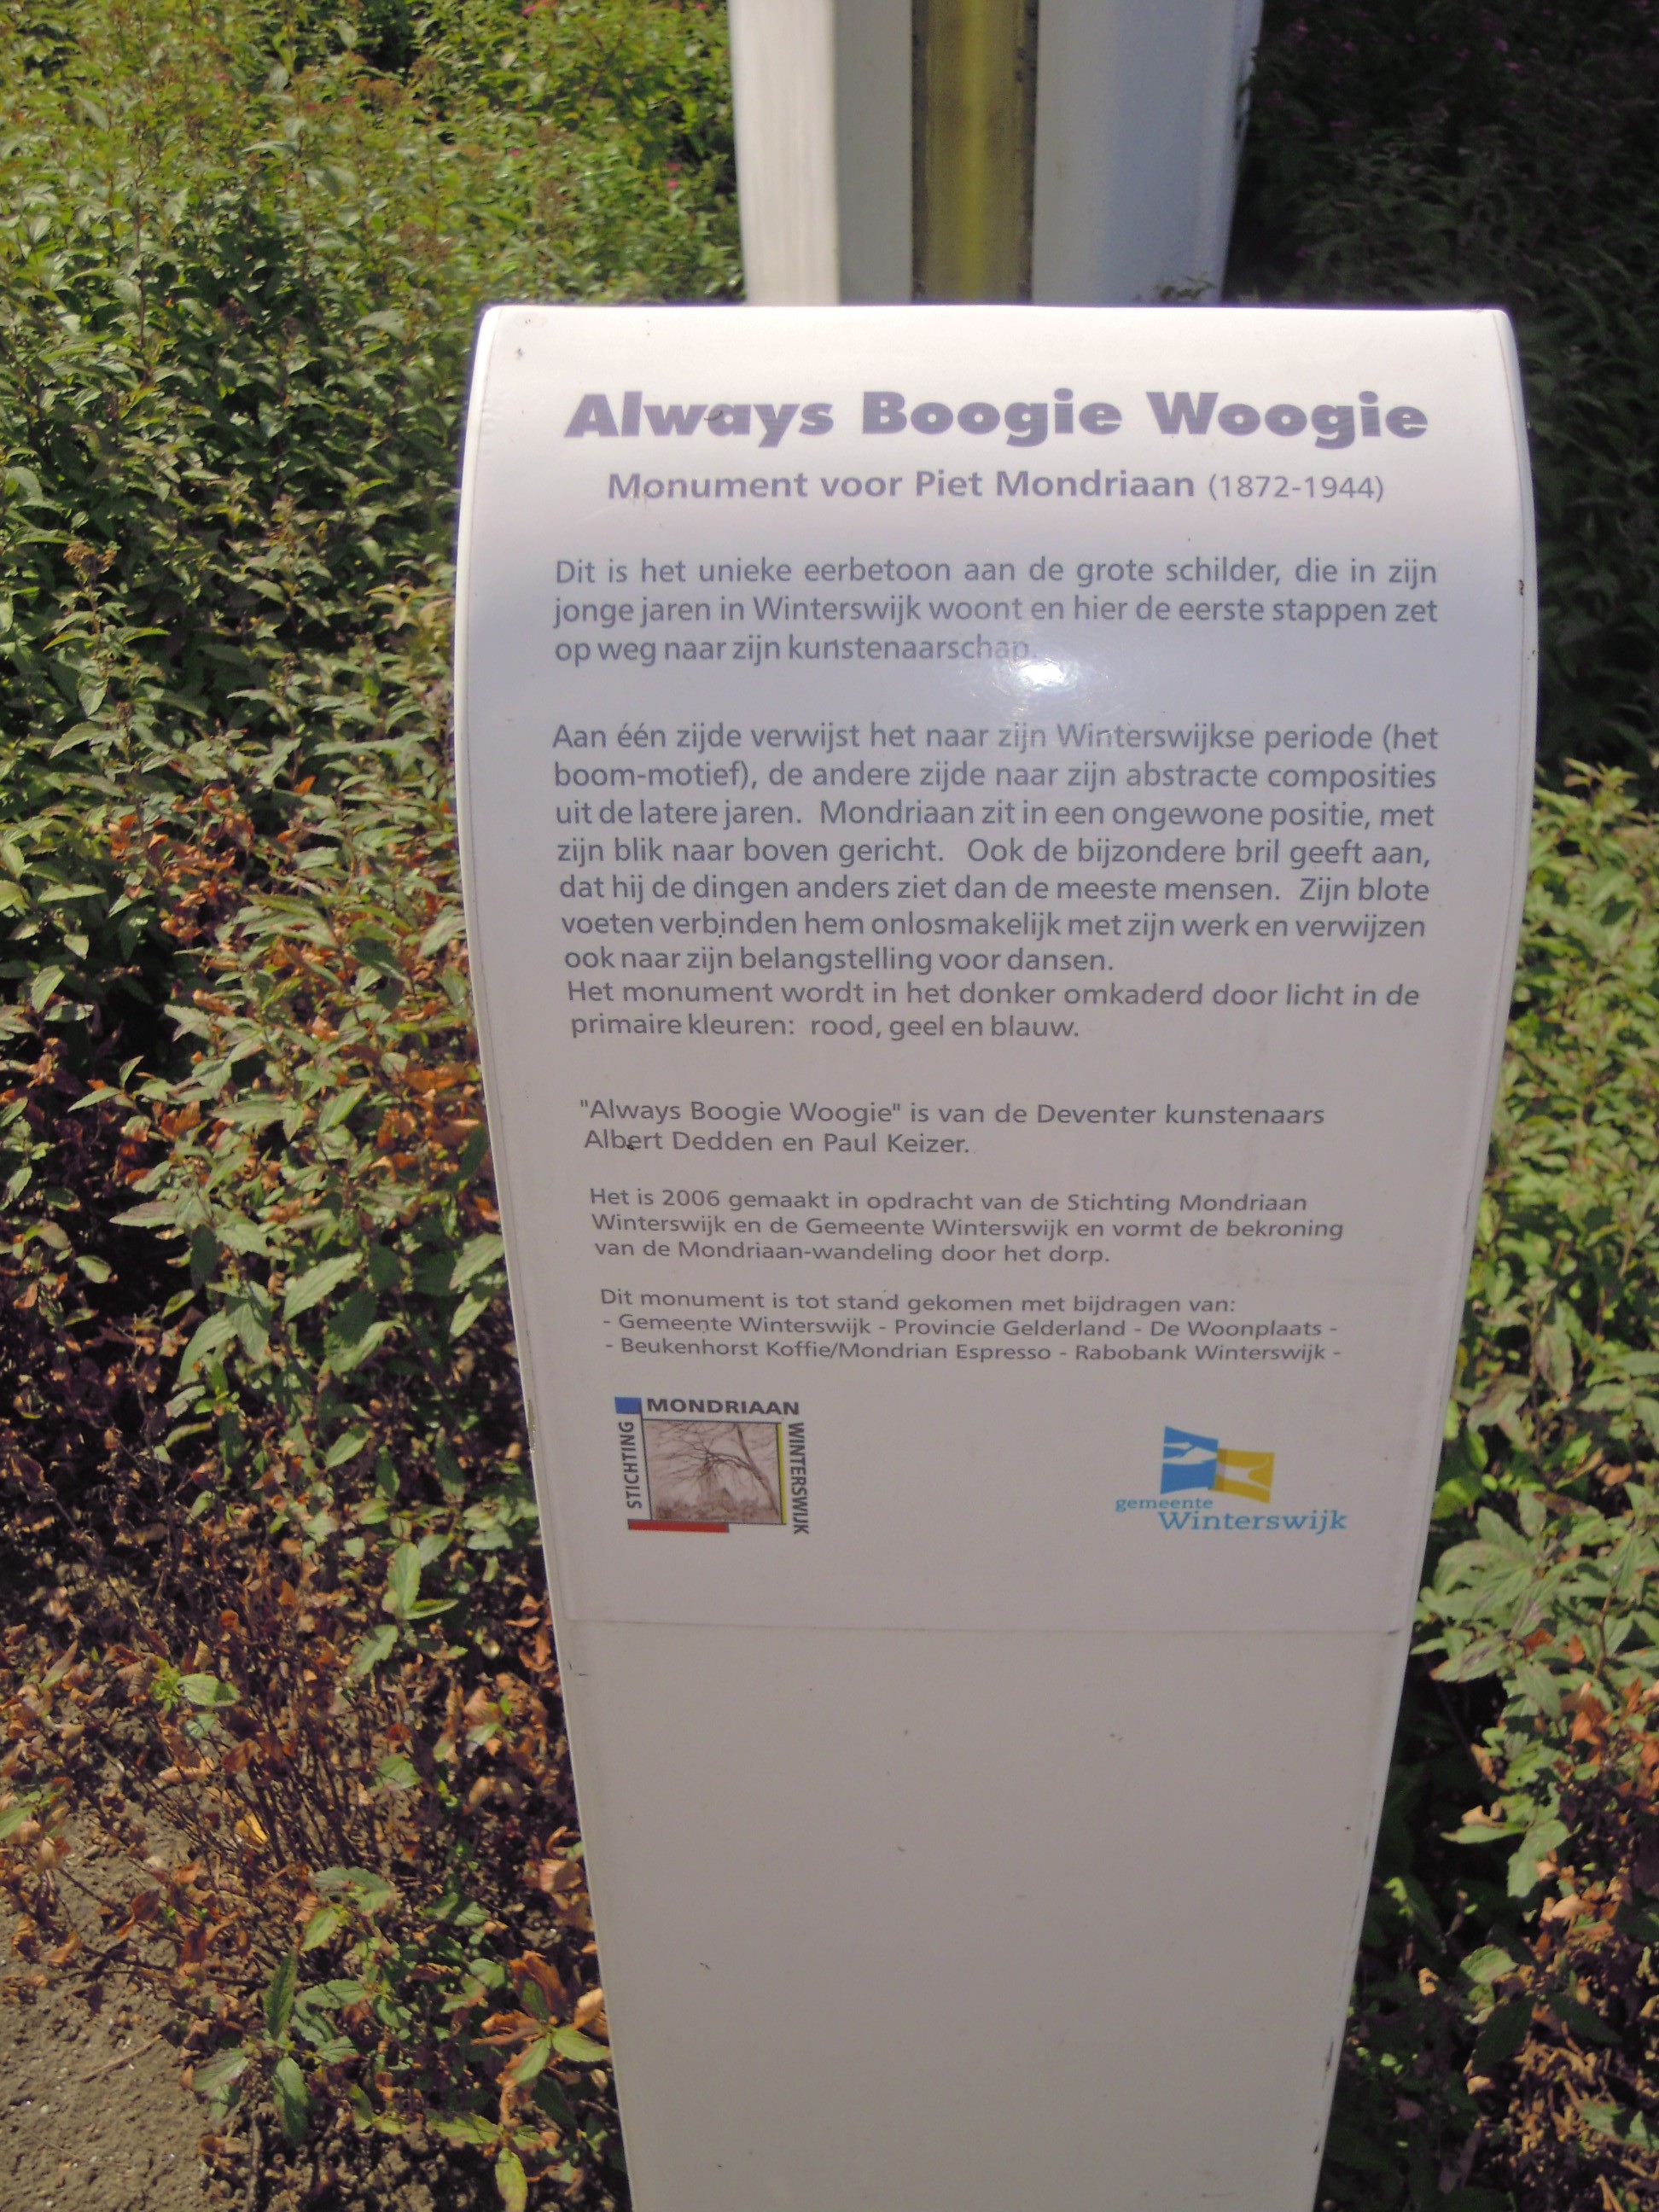 Winterswijk-Always-Boogie-Woogie-door-Albert-Dedden-en-Paul-Keizer-2006-eerbetoon-aan-Piet-Mondriaan-